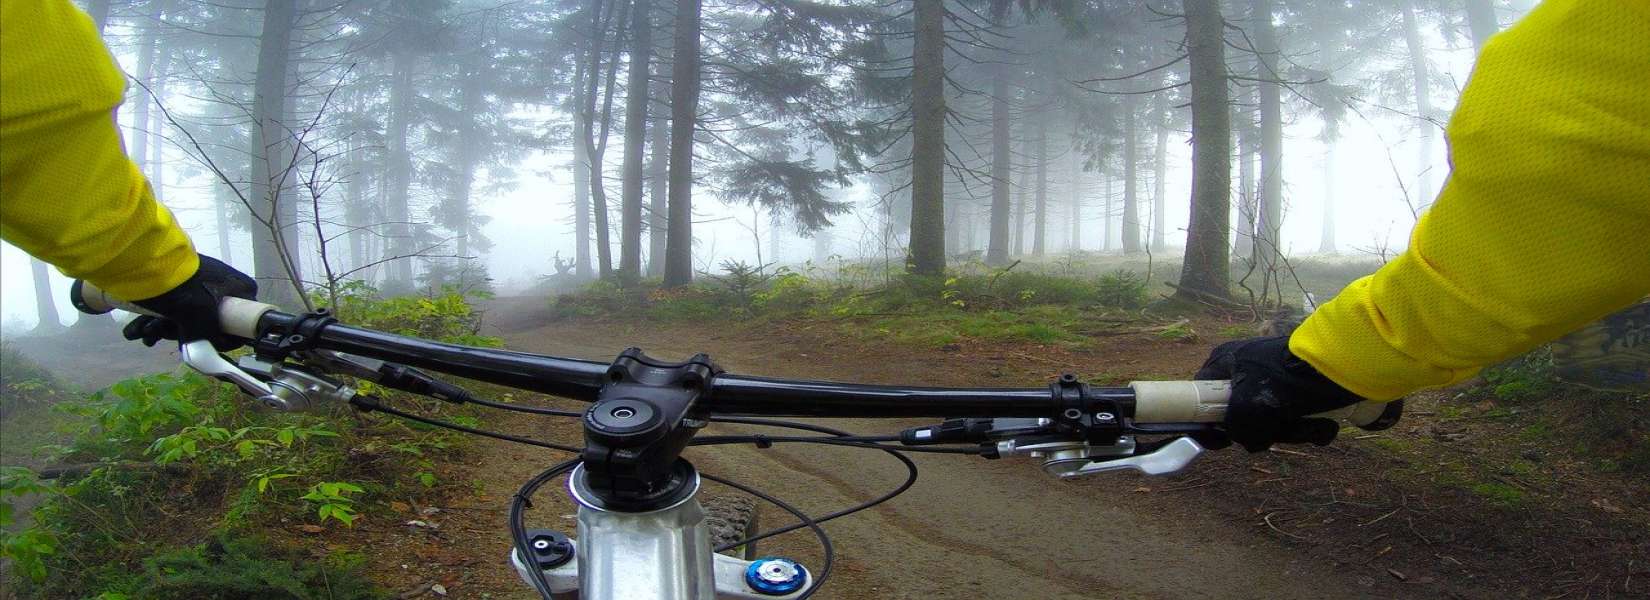 Mountain Biking in Darjeeling